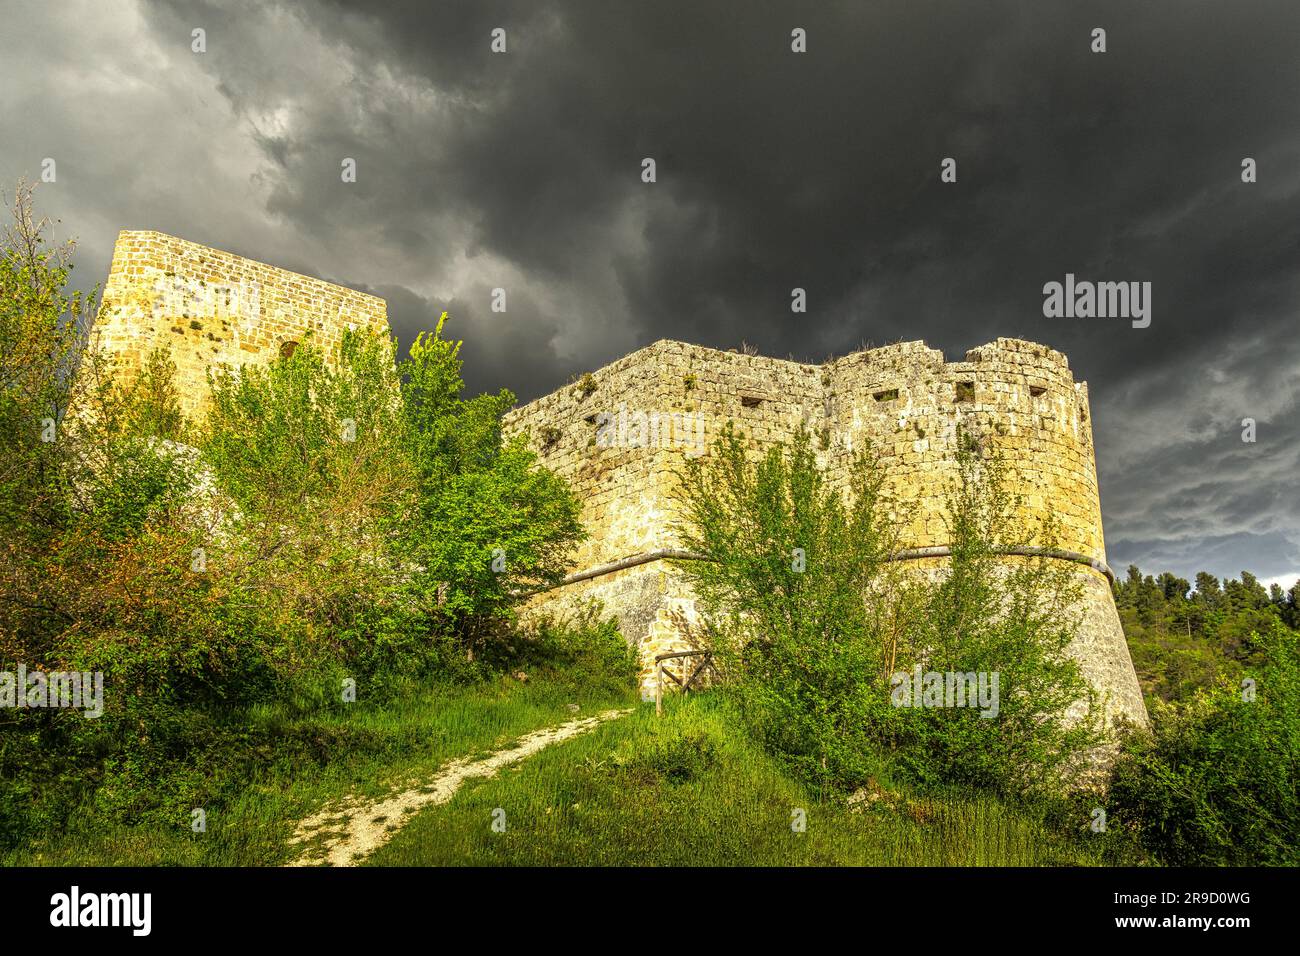 Las ruinas del castillo de Cantelmo, rodeado por un bosque de pinos en las laderas de Monte Morrone, tienen vistas al centro histórico de Popoli. Abruzos Foto de stock